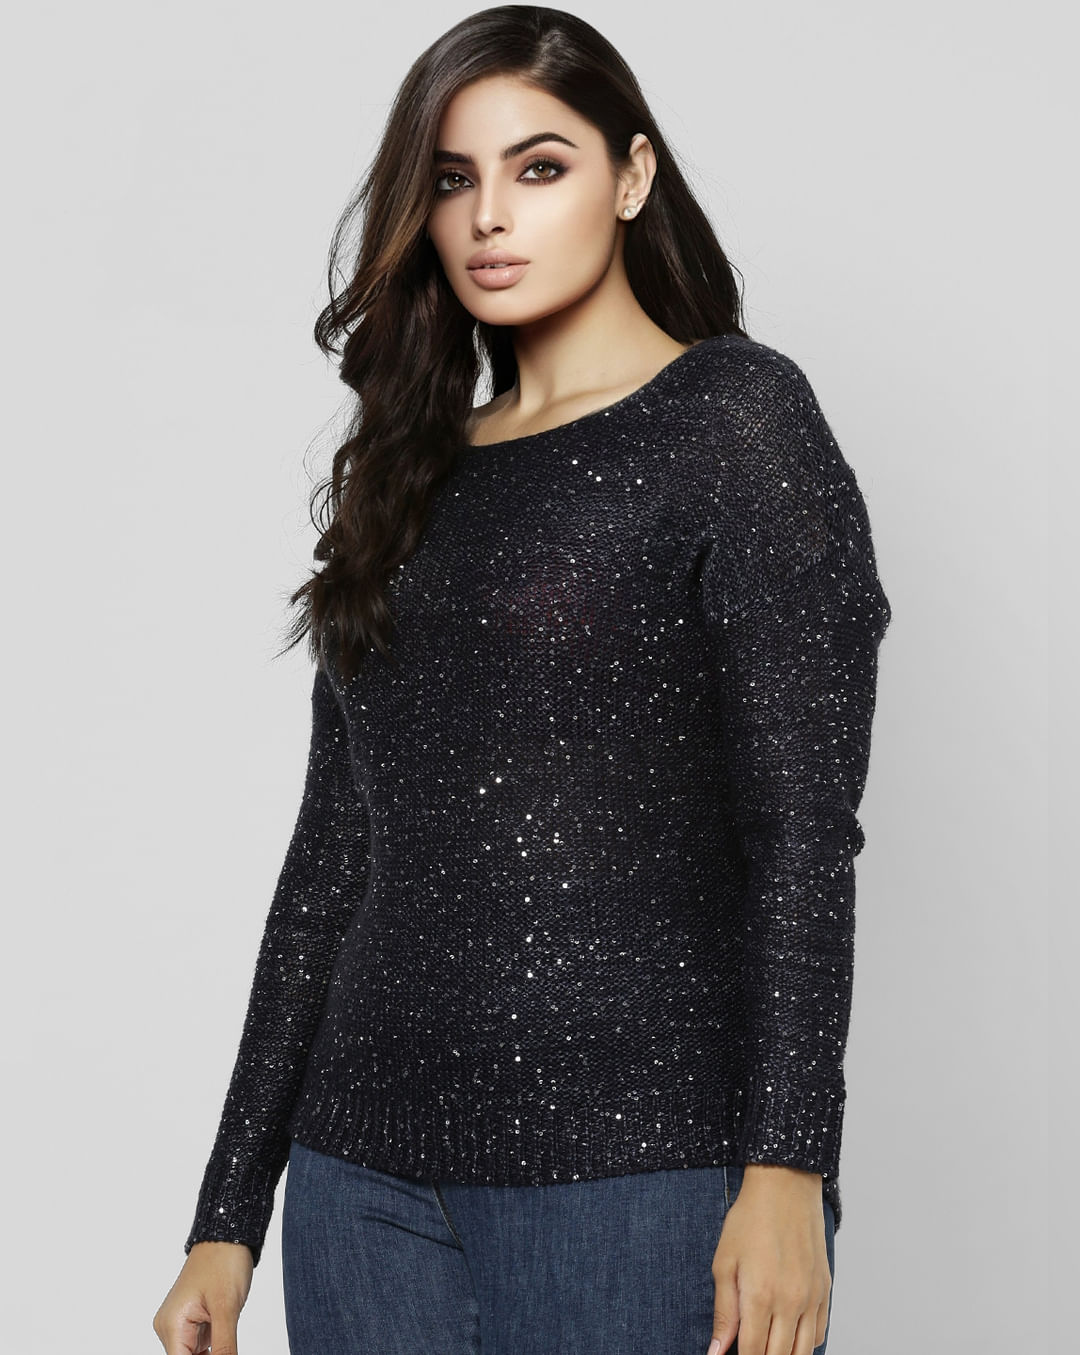 fornuft deltager Fugtig Buy Women Navy Blue Embellished Sweater online | VeroModa